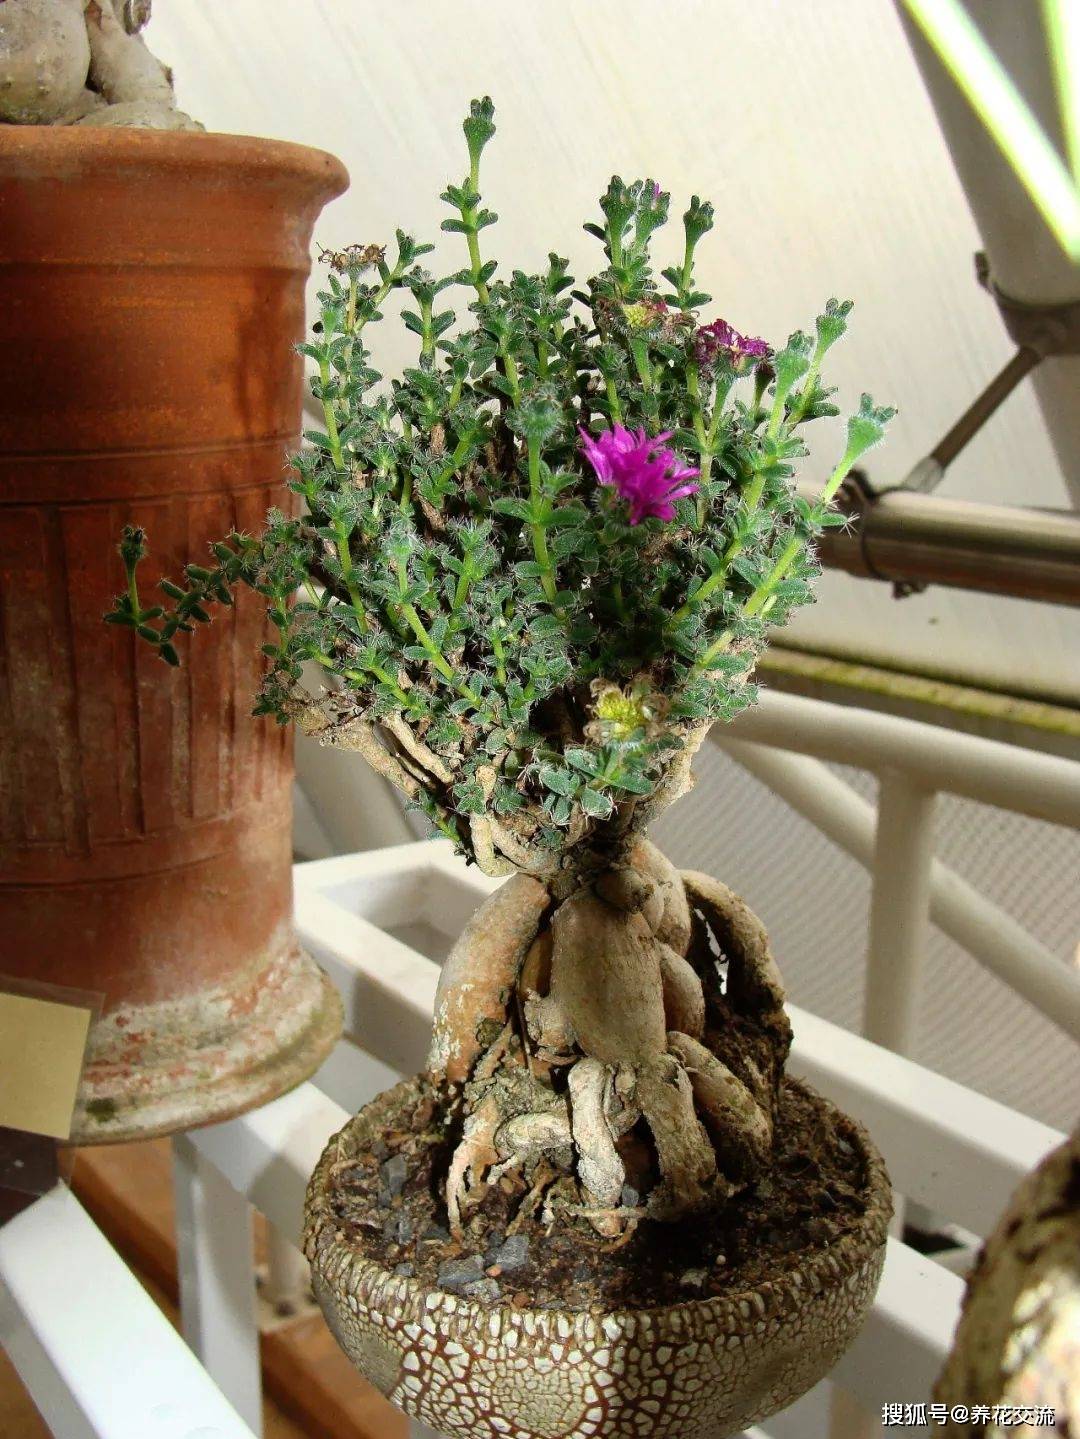 原创8种根茎膨大的盆栽植物适合养成桌面盆栽打理很方便